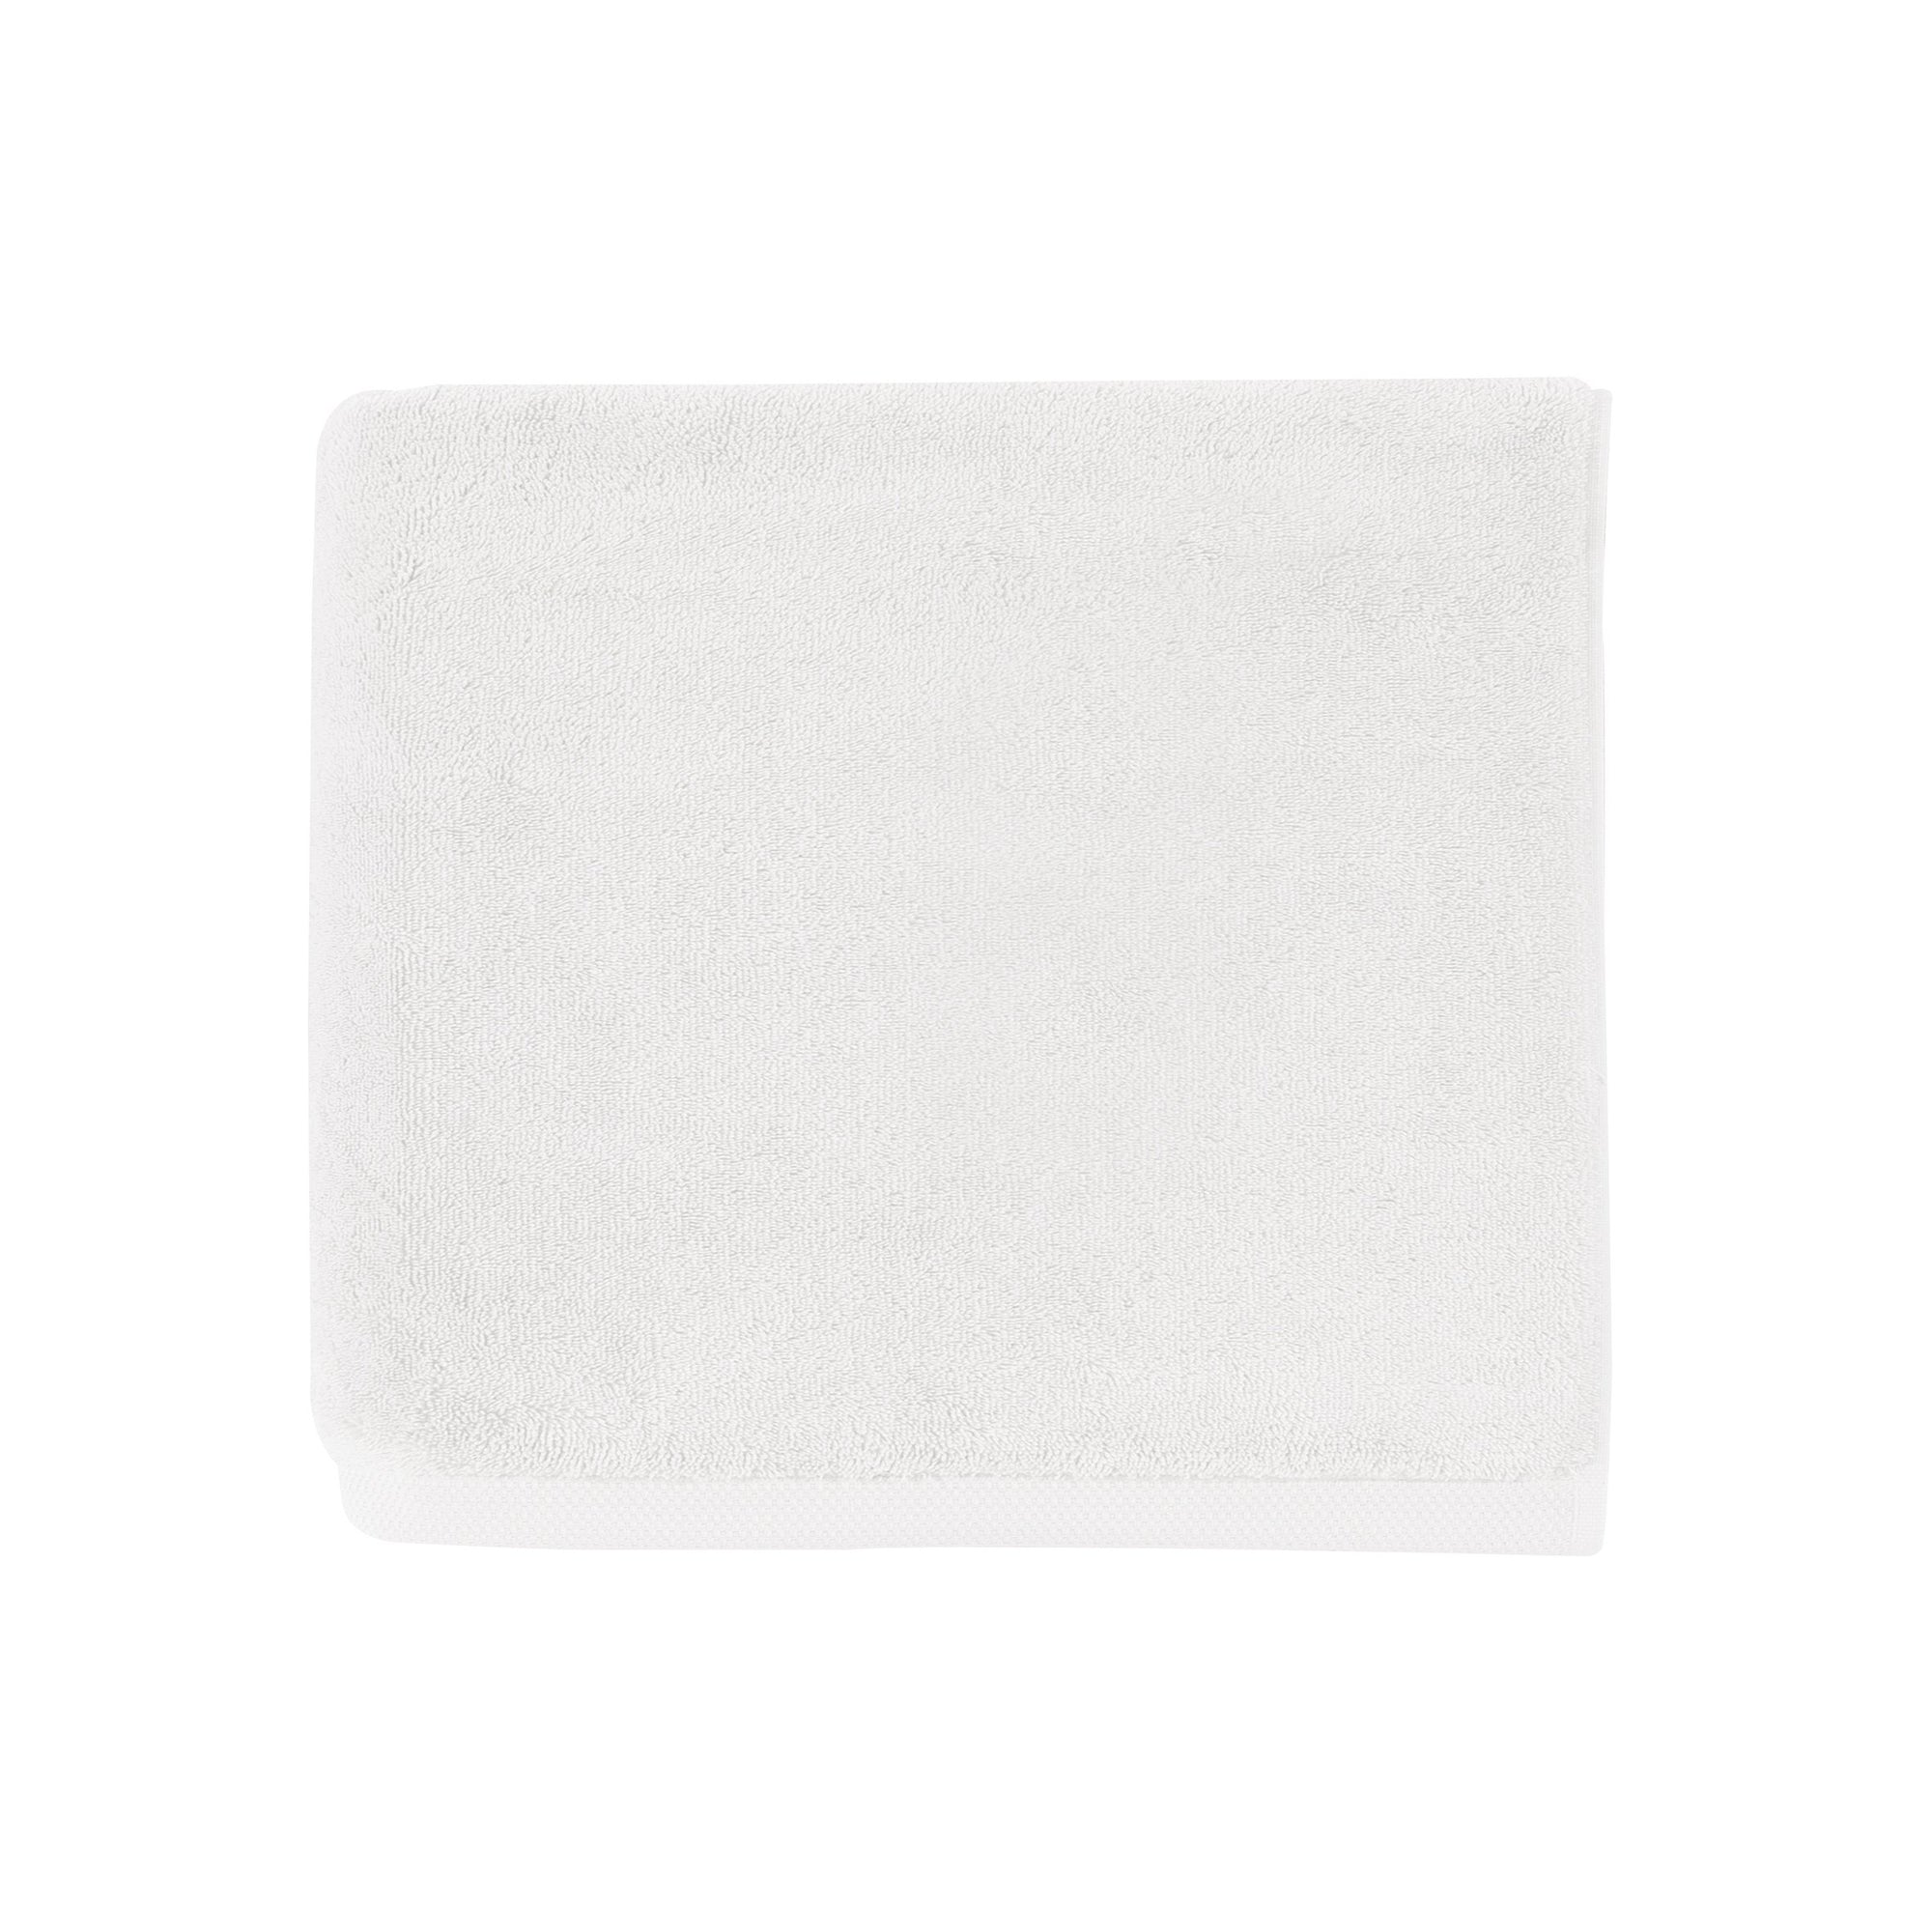 Fig Linens - Essentiel White Bath Towels by Alexandre Turpault